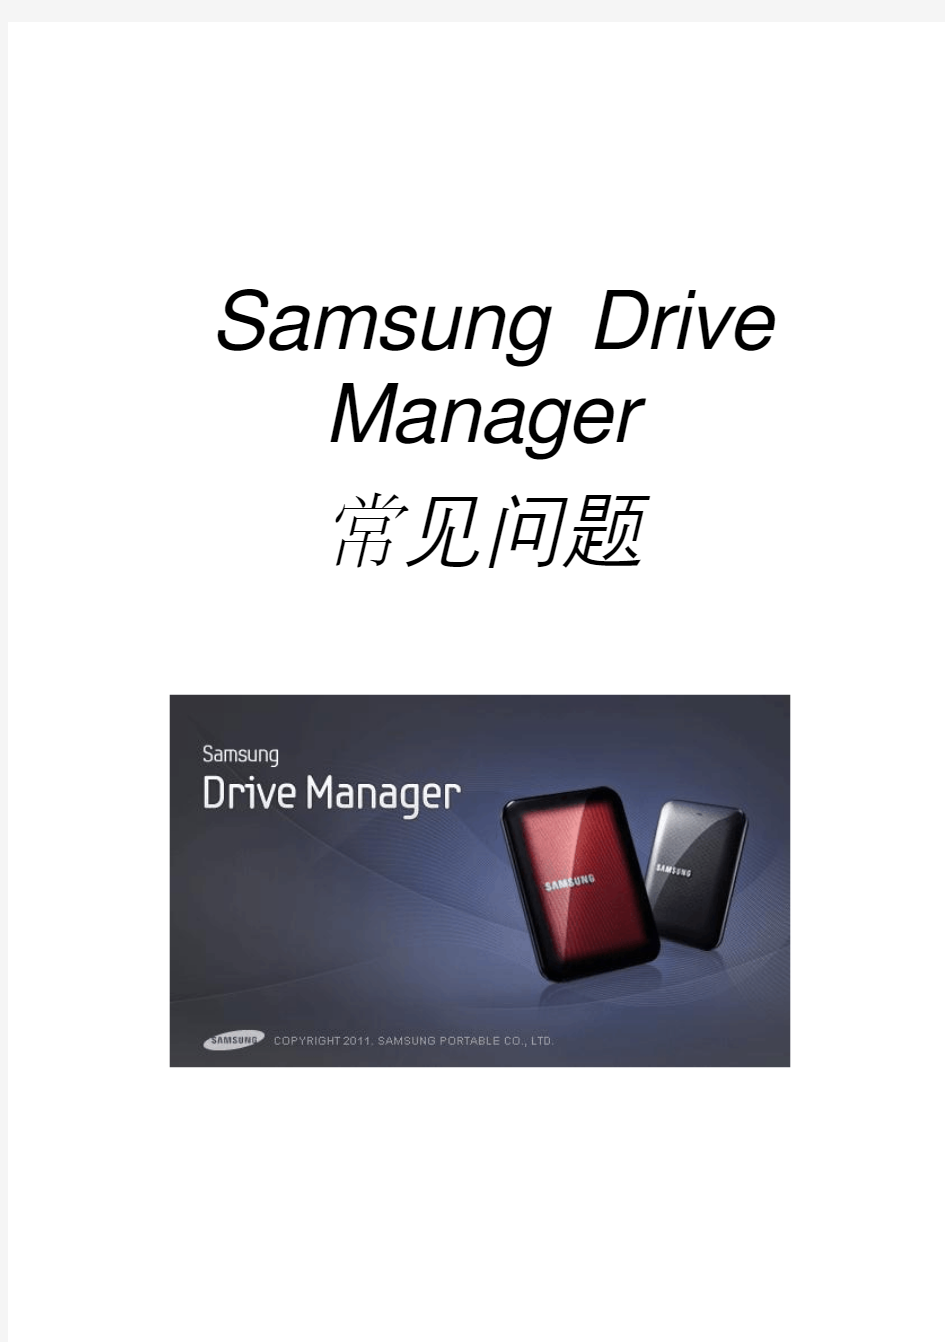 三星移动硬盘M3中文版使用手册(2)CHS_Samsung Drive Manager User's Manual Ver 2.7 (1)